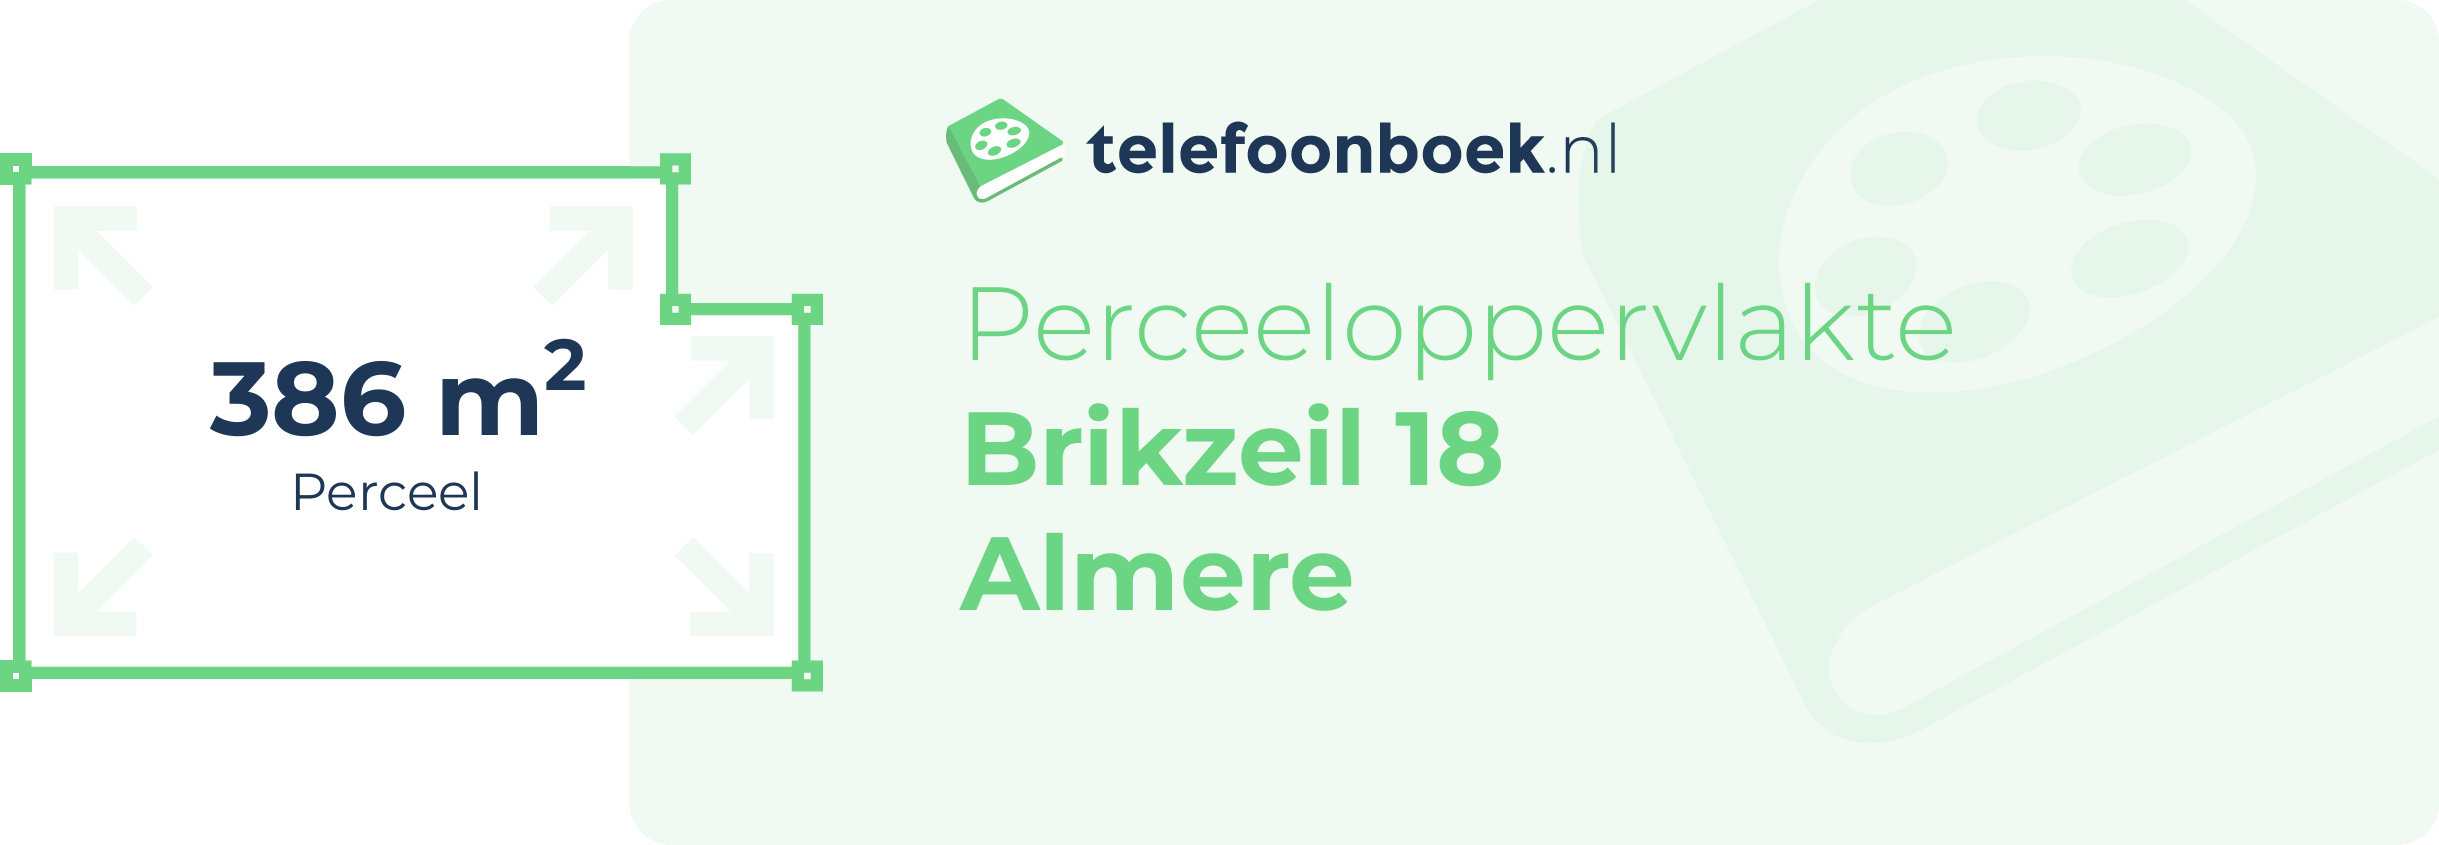 Perceeloppervlakte Brikzeil 18 Almere